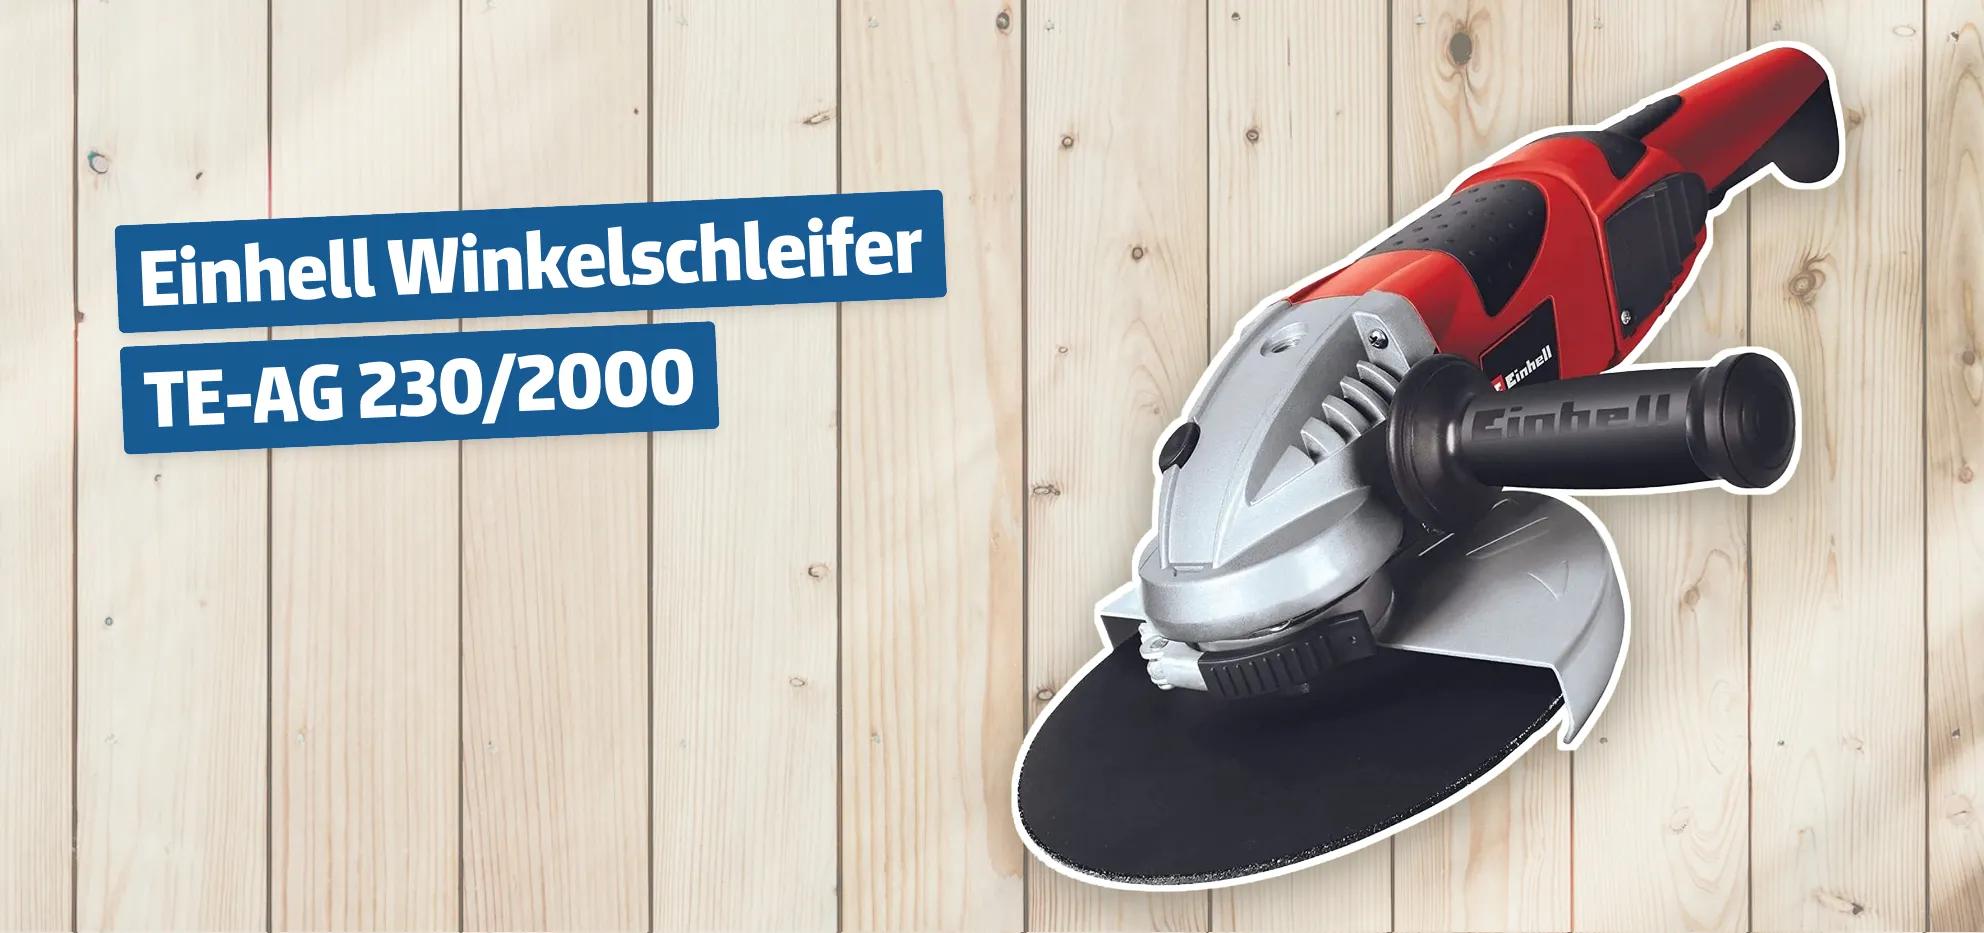 Einhell Winkelschleifer TE-AG 230/2000